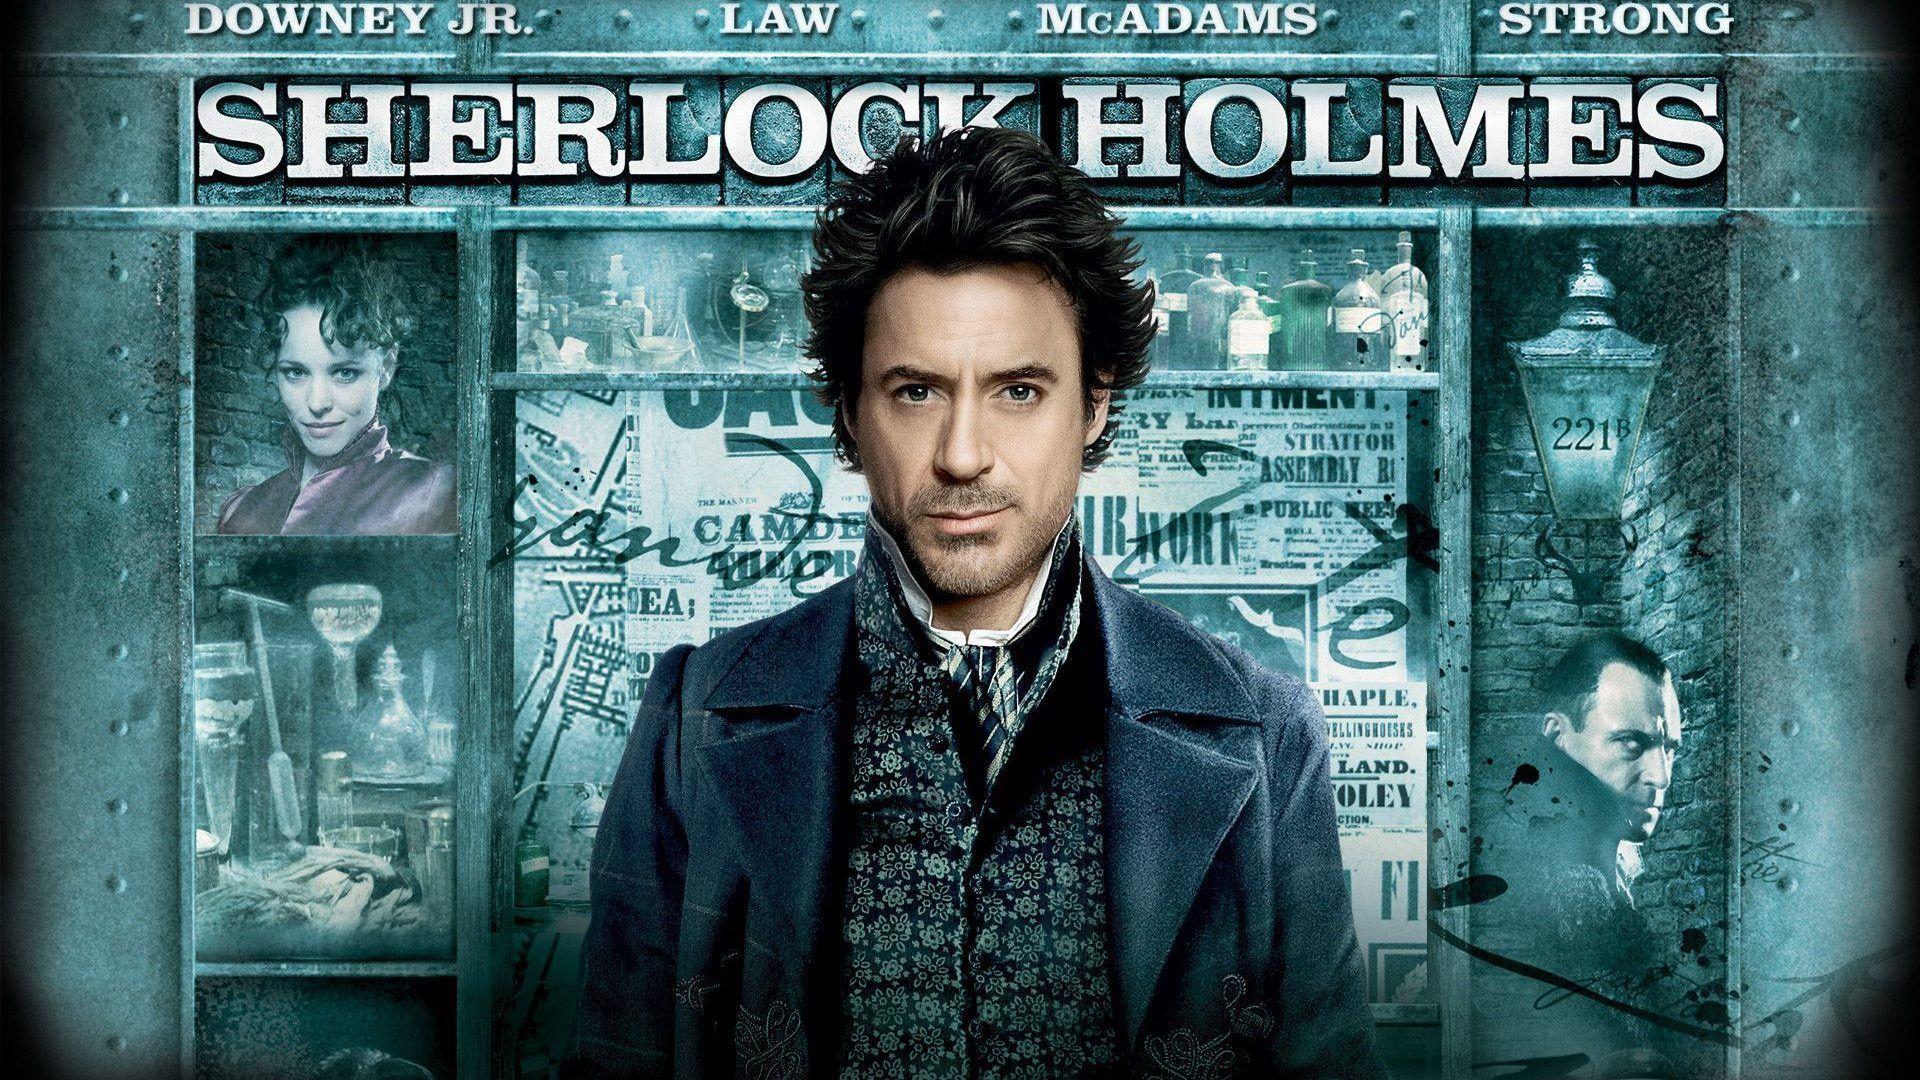 Sherlock Holmes Wallpaper Widescreen • dodskypict